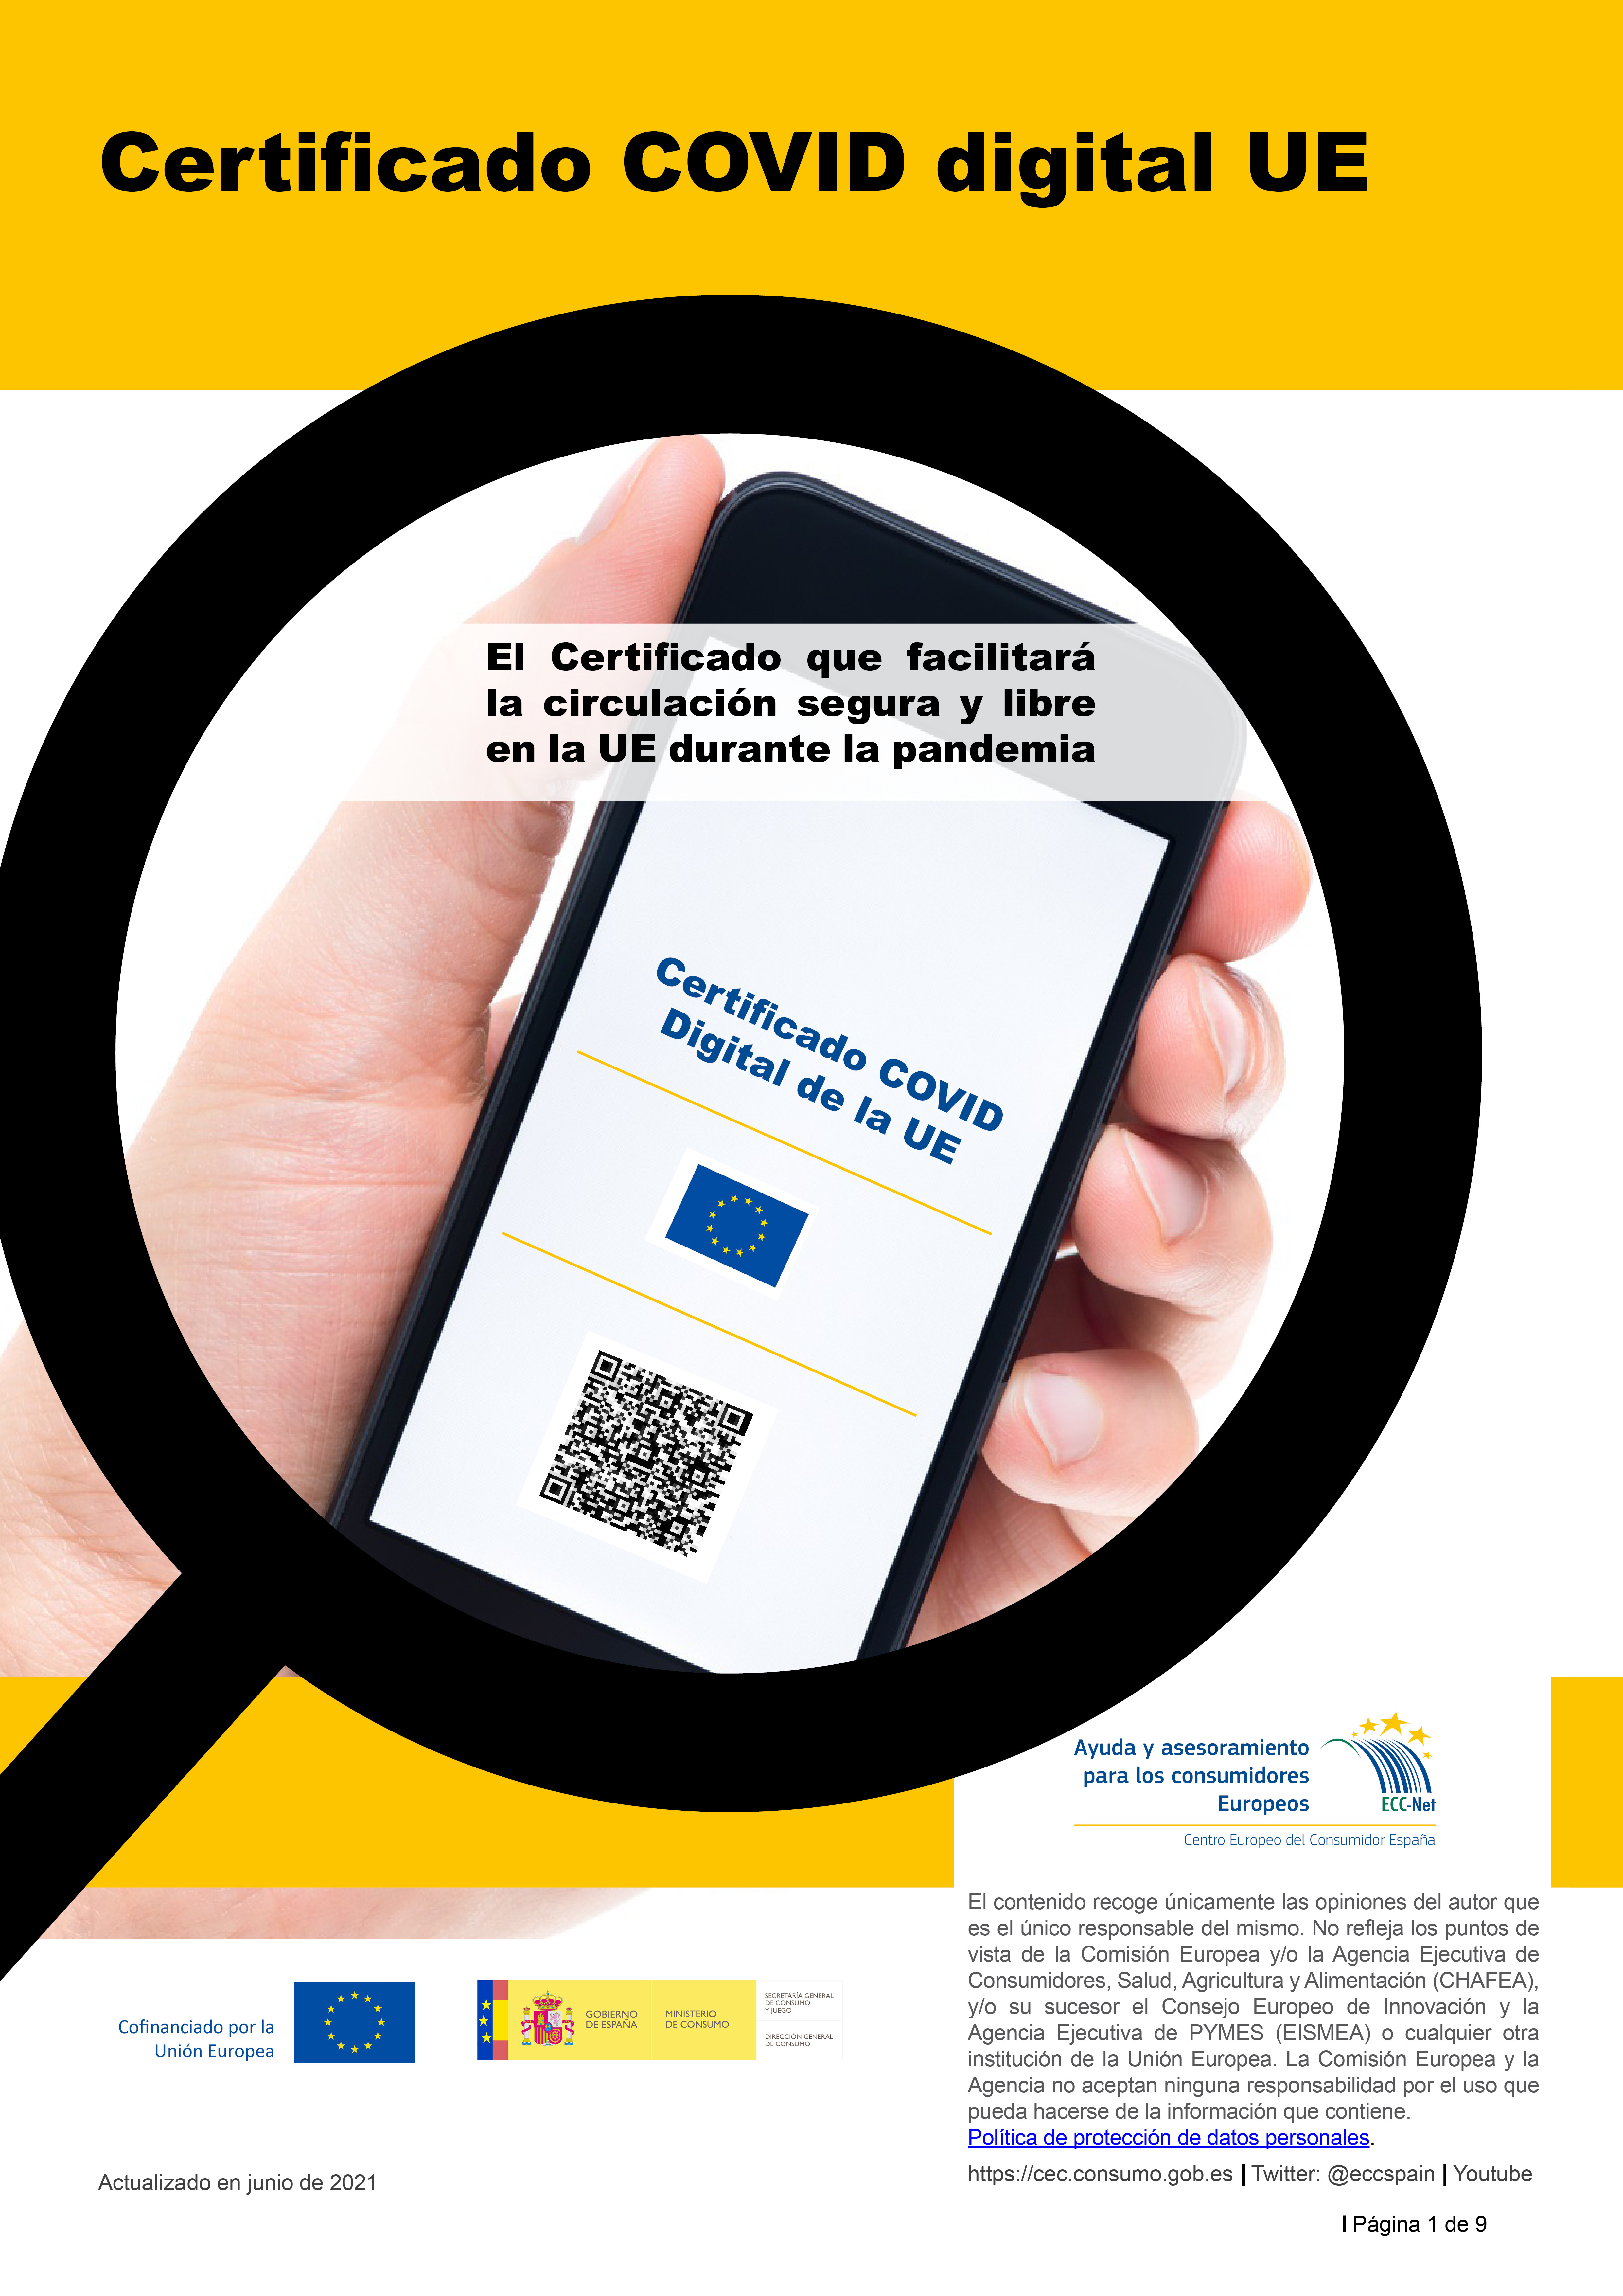 Certificado COVID digital de la UE